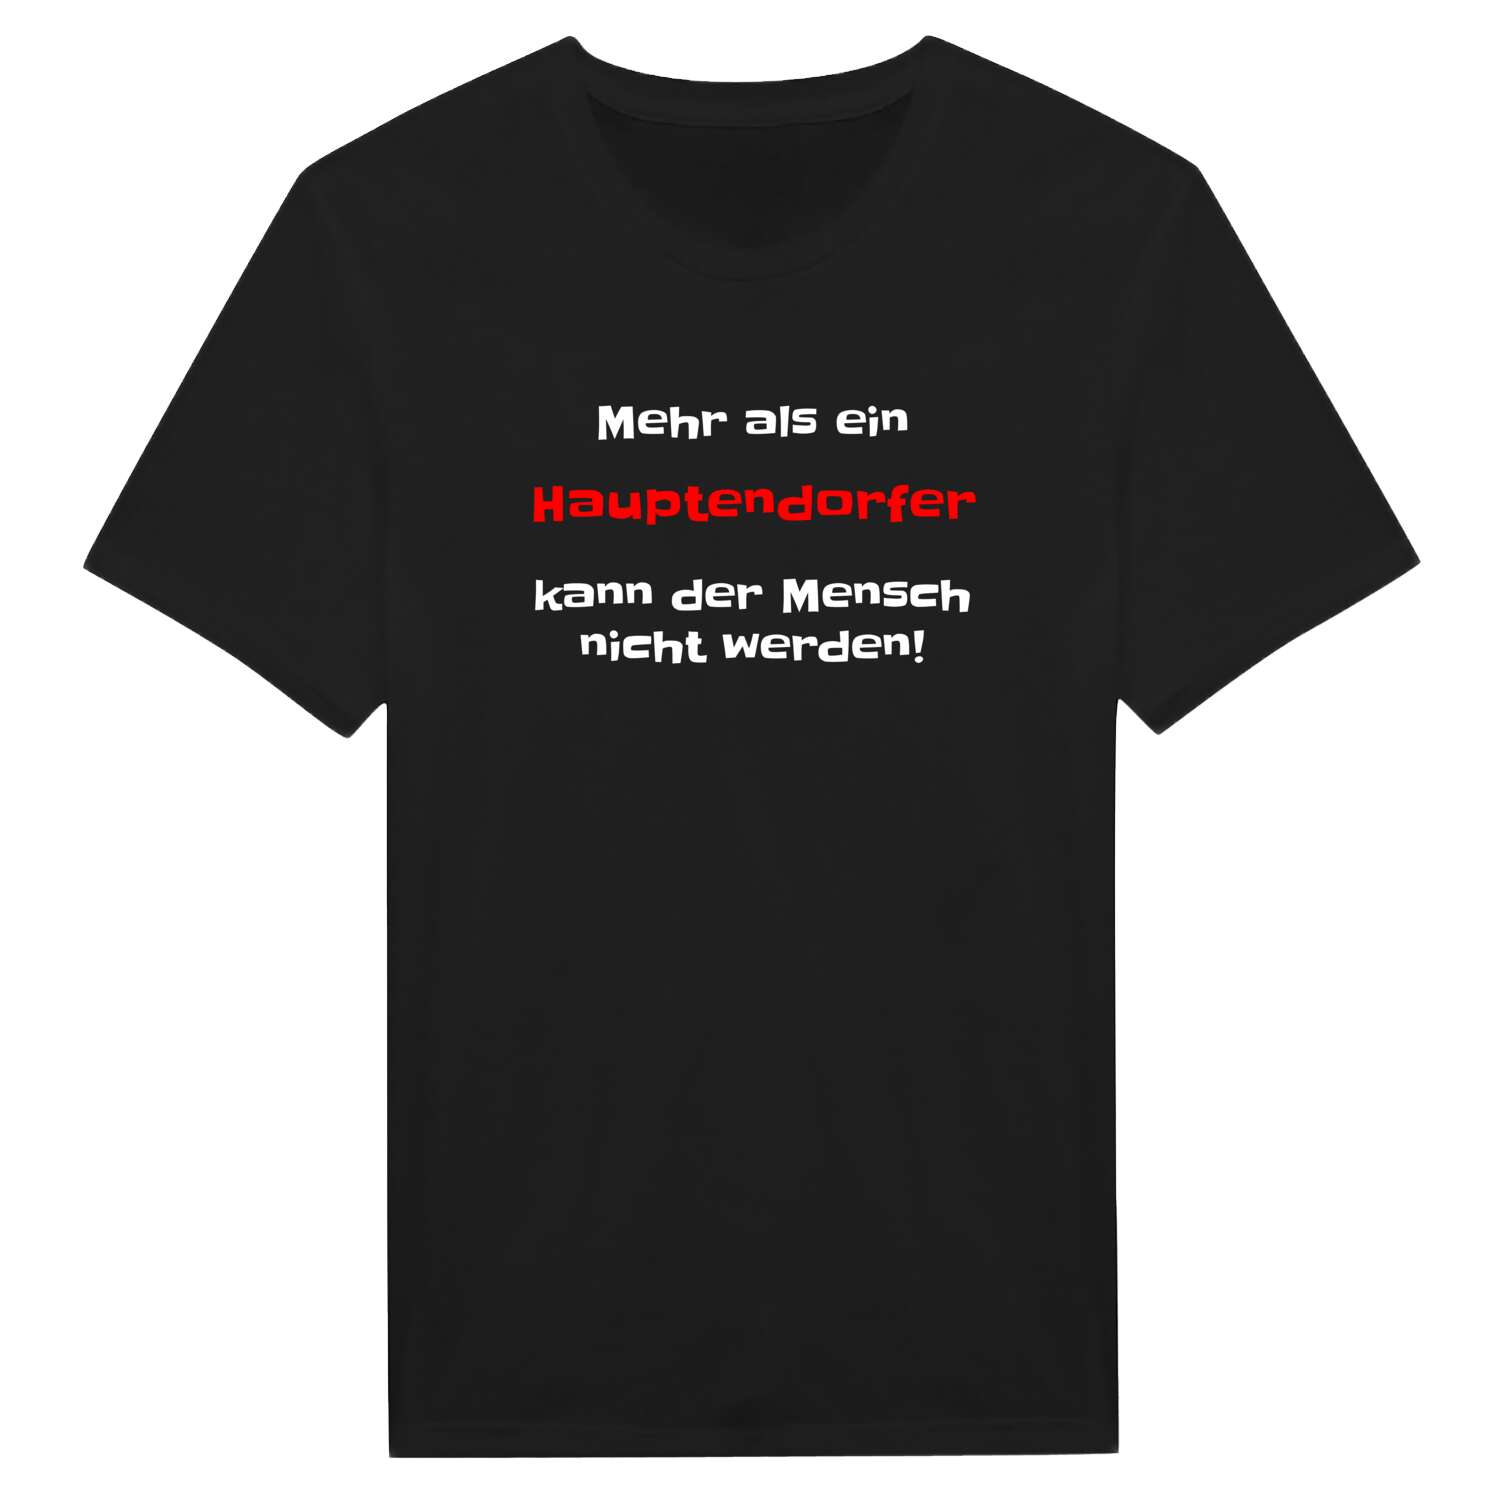 Hauptendorf T-Shirt »Mehr als ein«